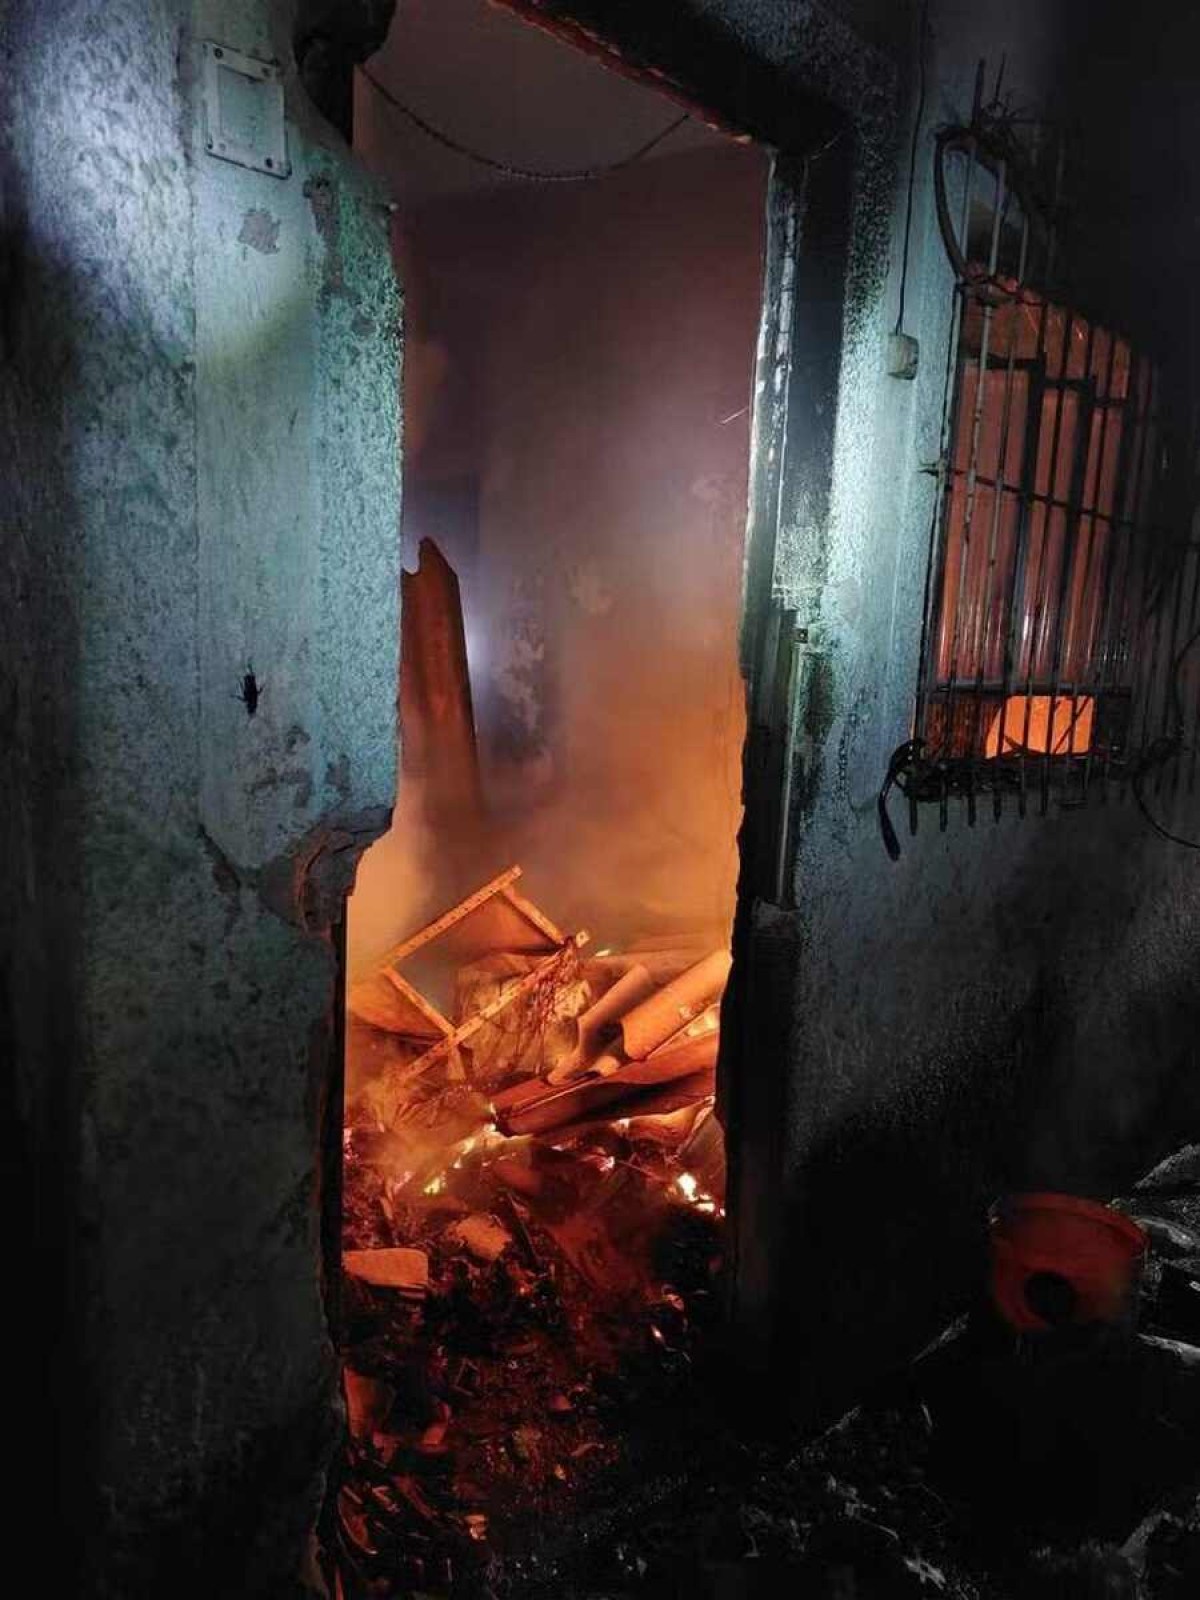 Homem coloca fogo em materiais recicláveis dentro de casa e morre